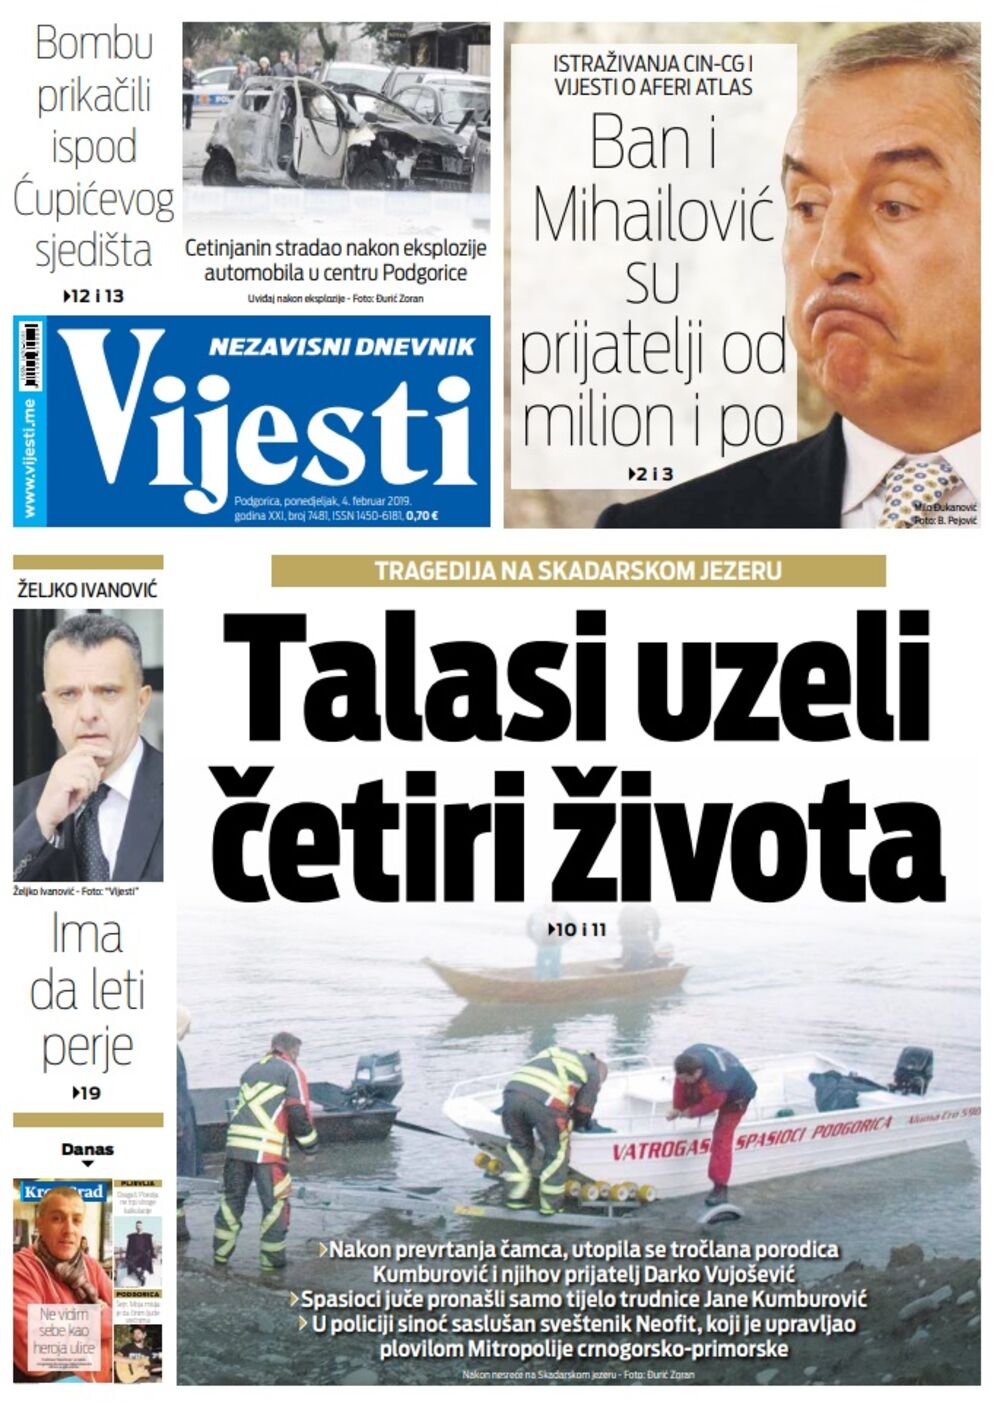 Naslovna strana "Vijesti" za 4. februar, Foto: Vijesti